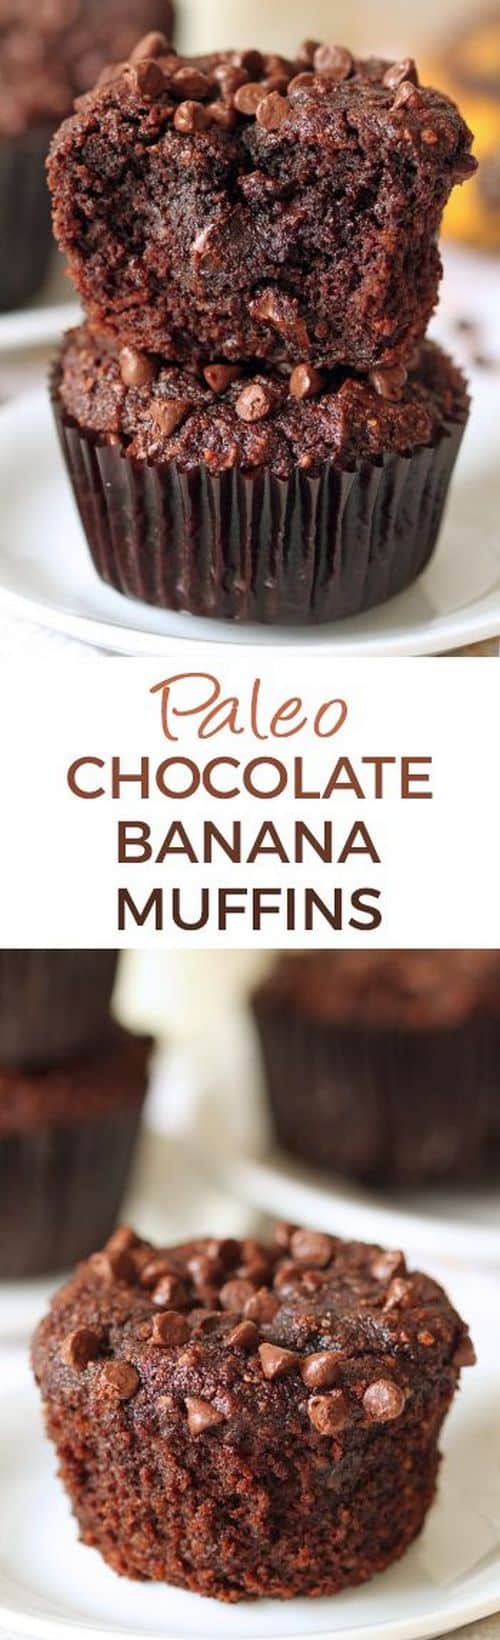 Mediterranean Paleo Chocolate Banana Muffins